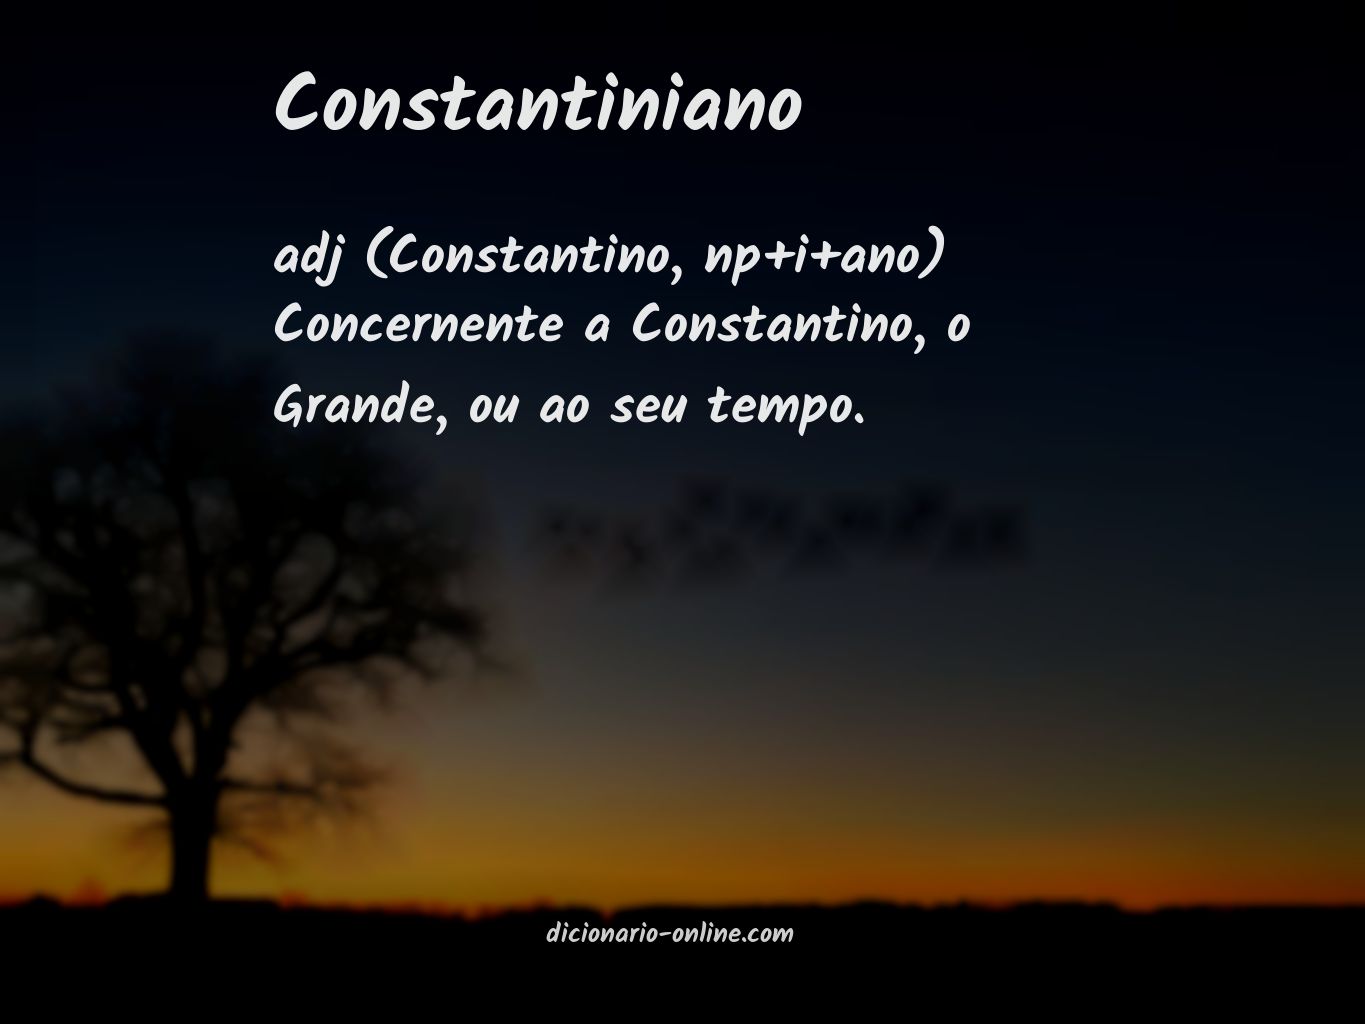 Significado de constantiniano